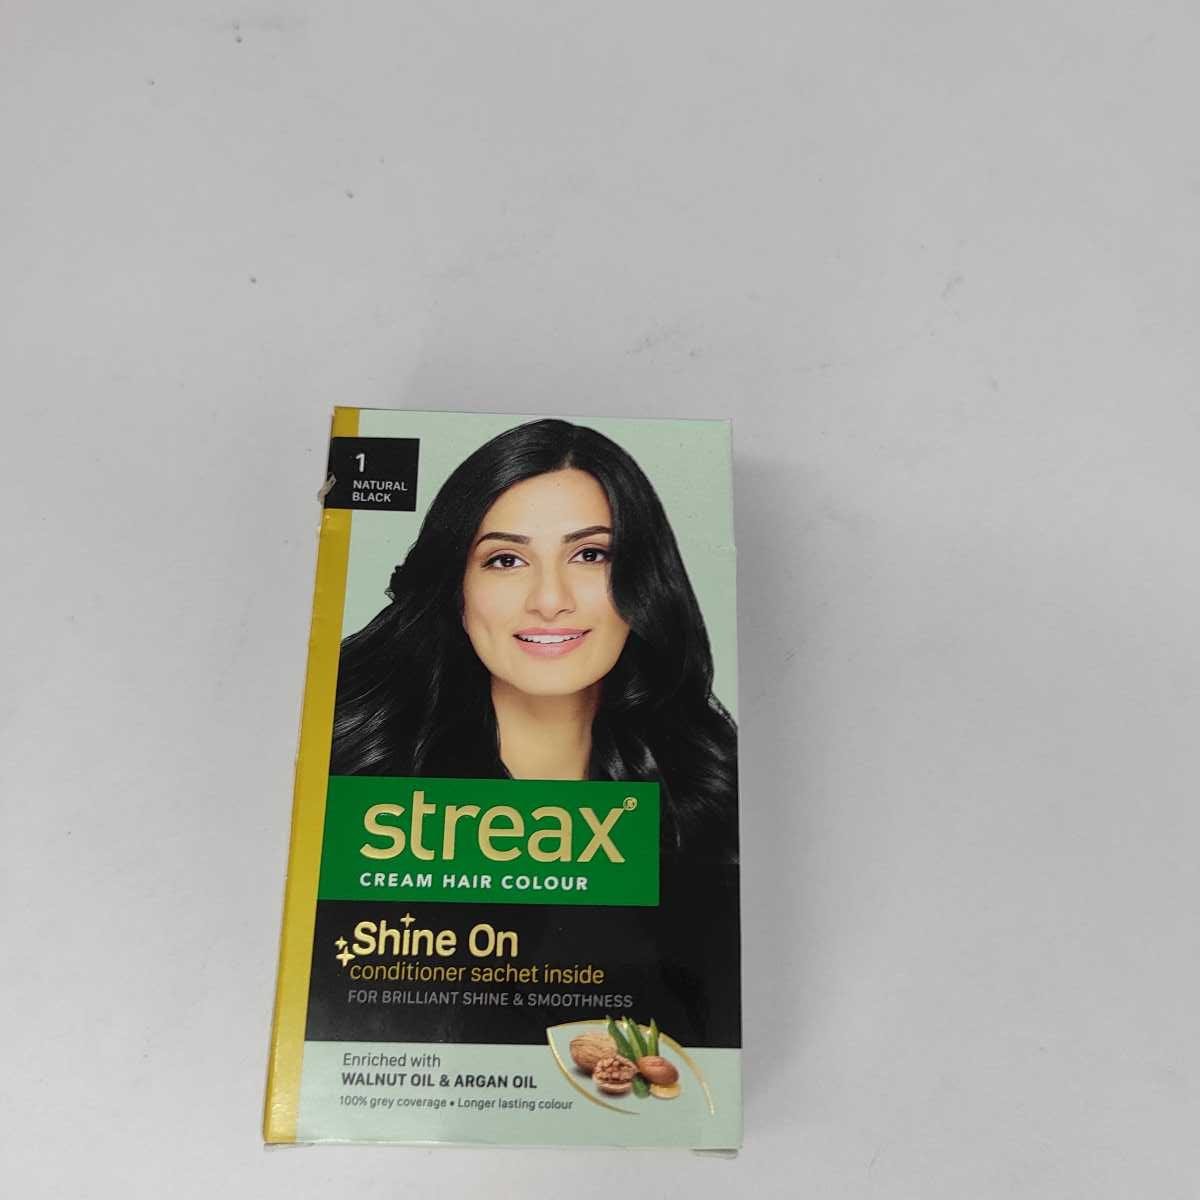 Streax cream hair colour( natural black 1)